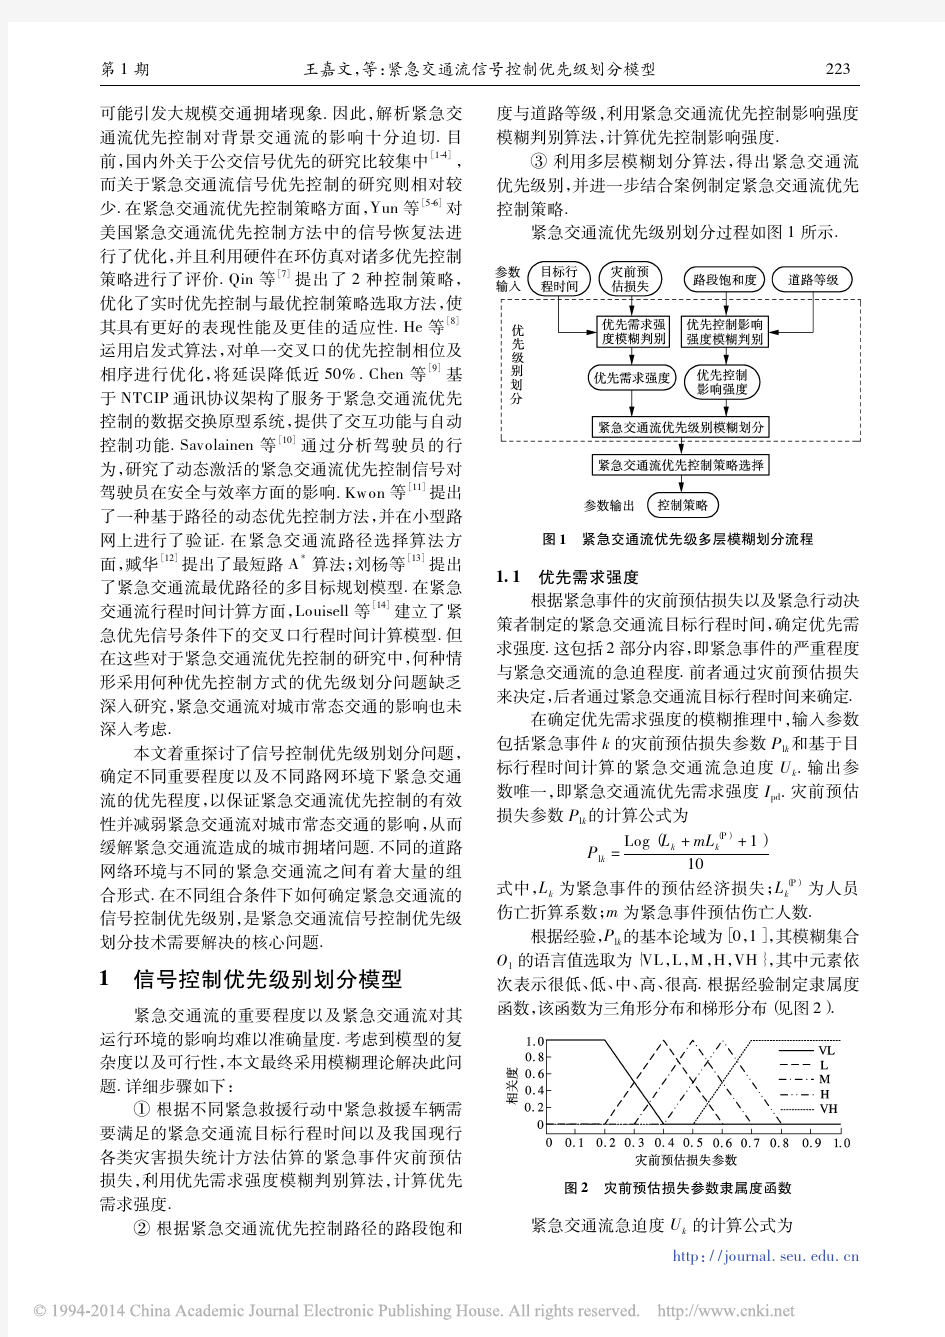 紧急交通流信号控制优先级划分模型(王嘉文)